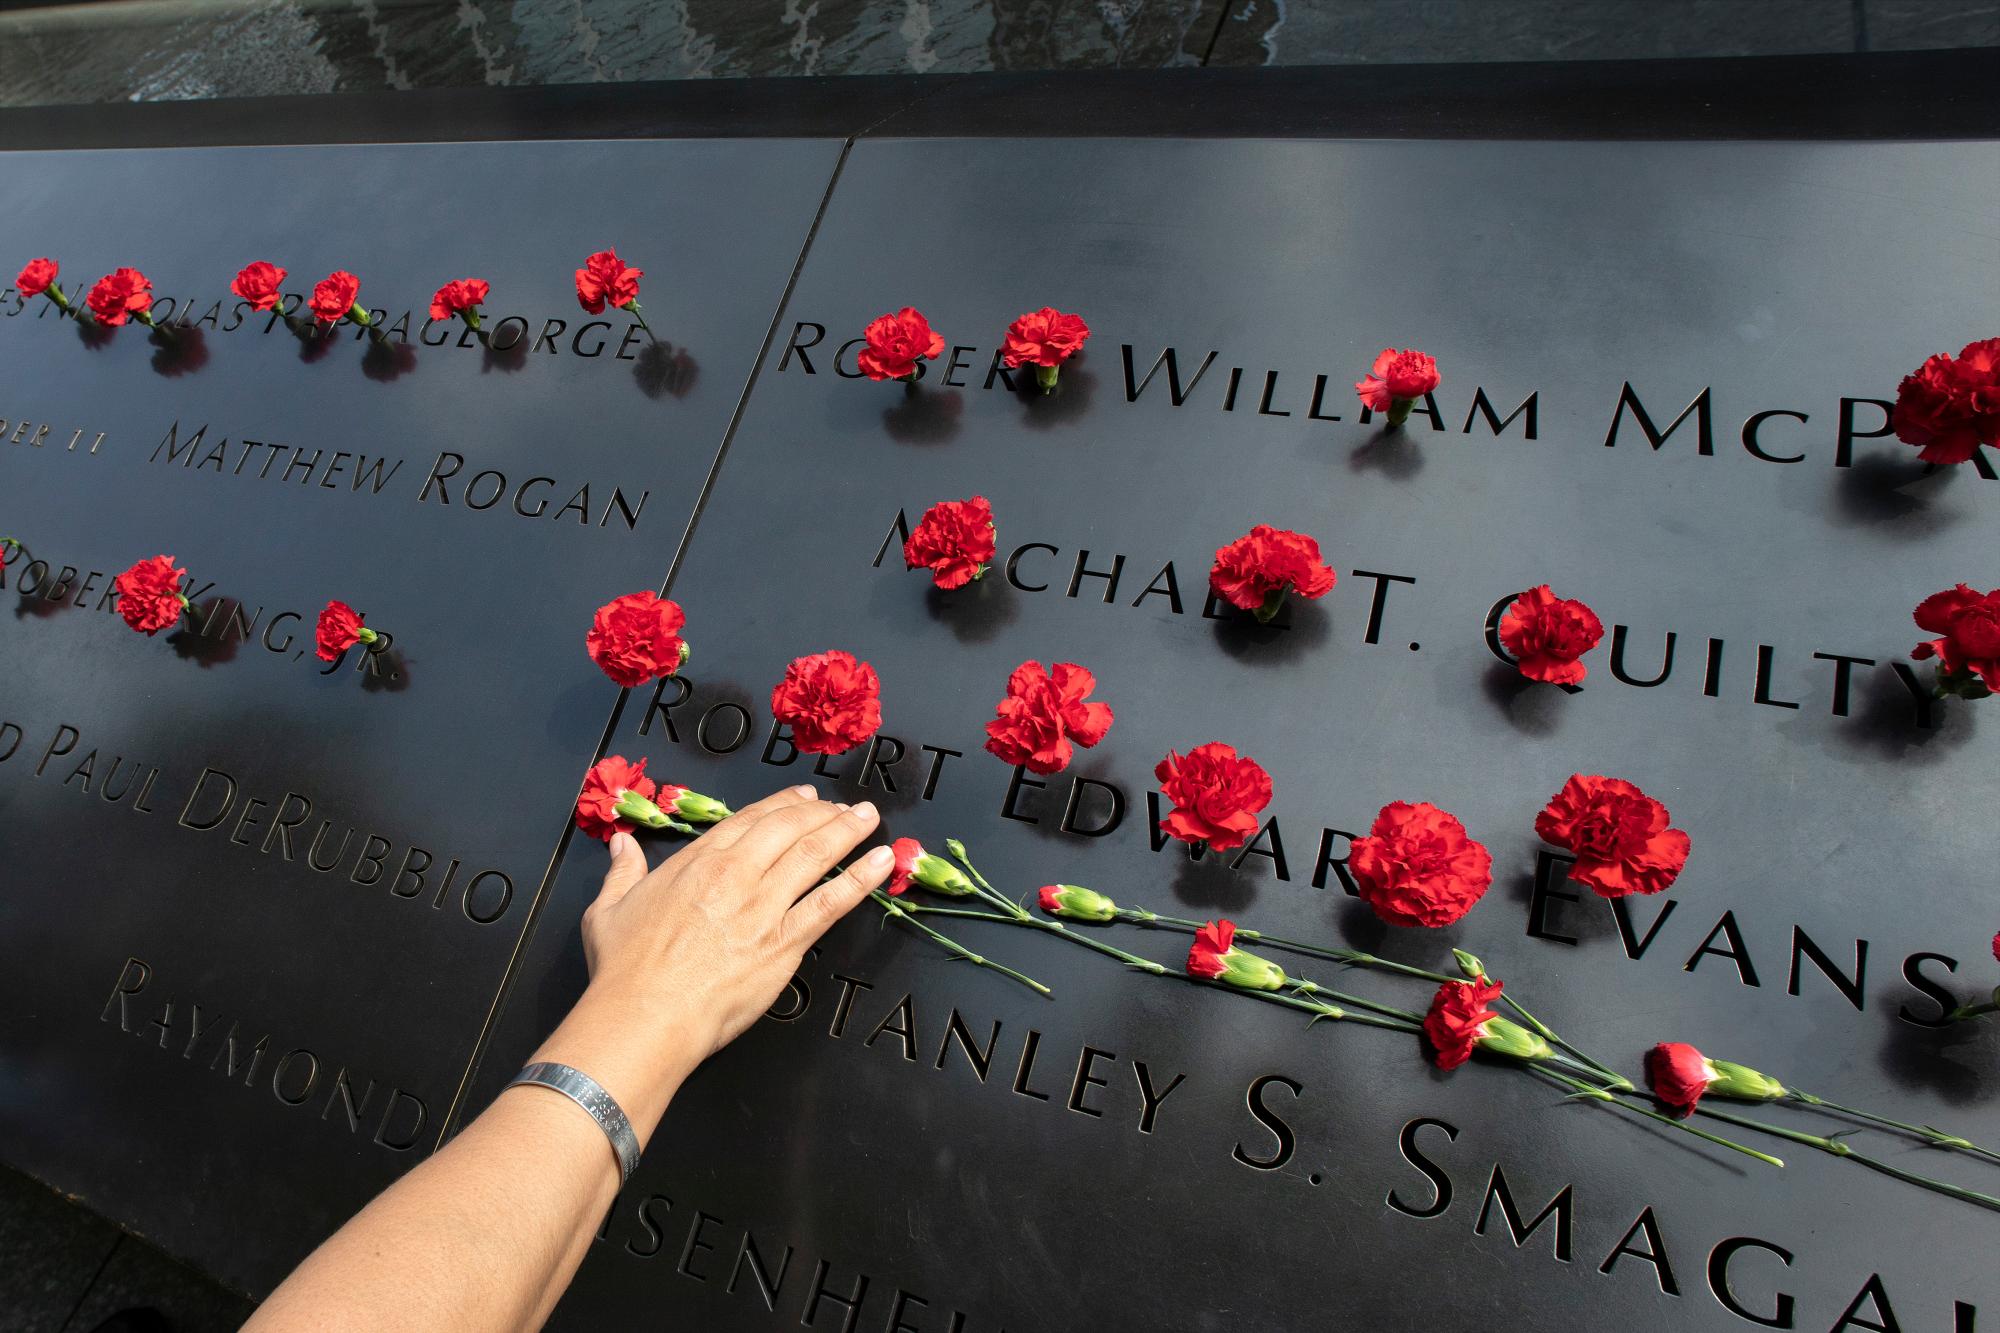 Norma Molina, de San Antonio, Texas, deja flores con los nombres de los bomberos de Engine 33 en el Memorial del 11 de septiembre, lunes 9 de septiembre de 2019, en Nueva York. Su novio Robert Edward Evans, miembro del Motor 33, fue asesinado en la torre norte del World Trade Center el 11 de septiembre de 2001. 